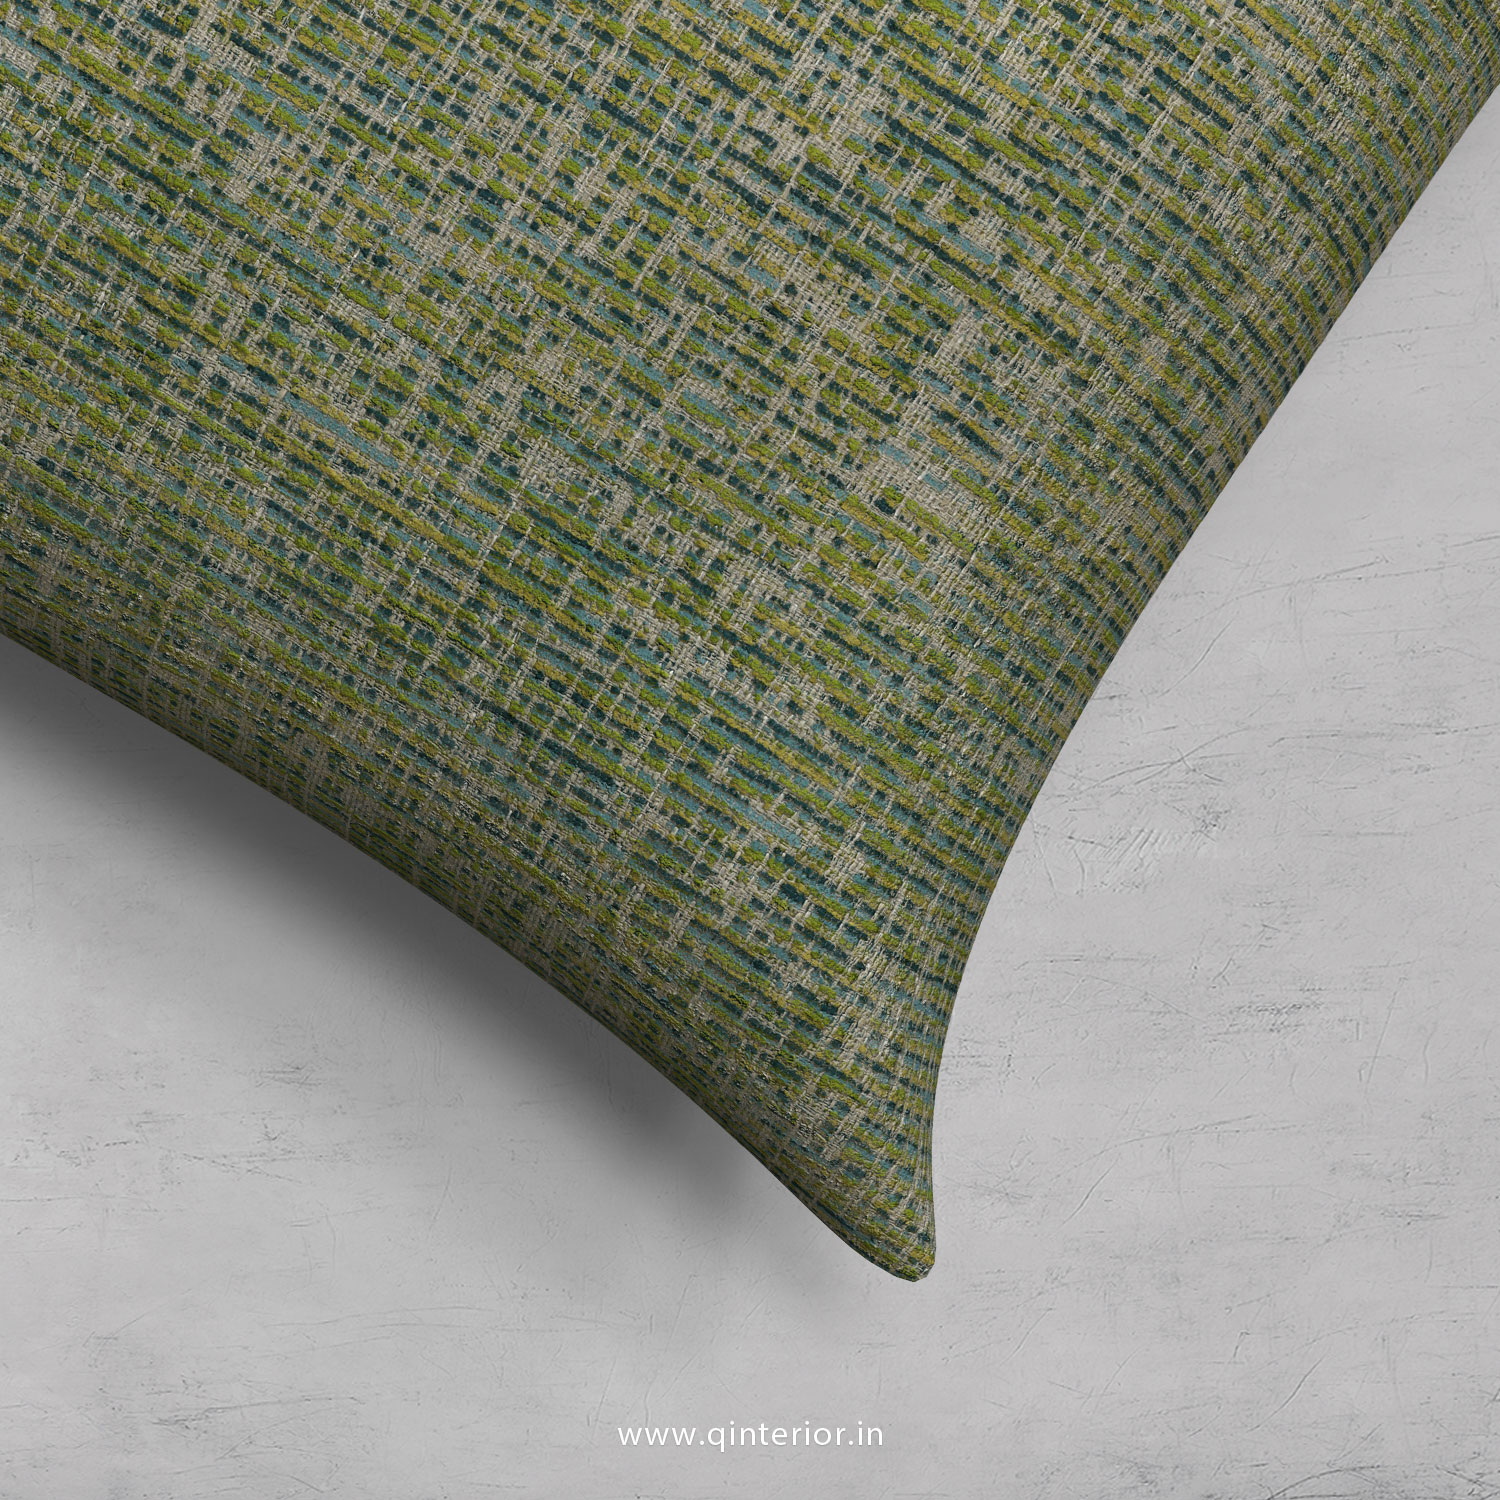 Cushion With Cushion Cover in Jacquard- CUS001 JQ22